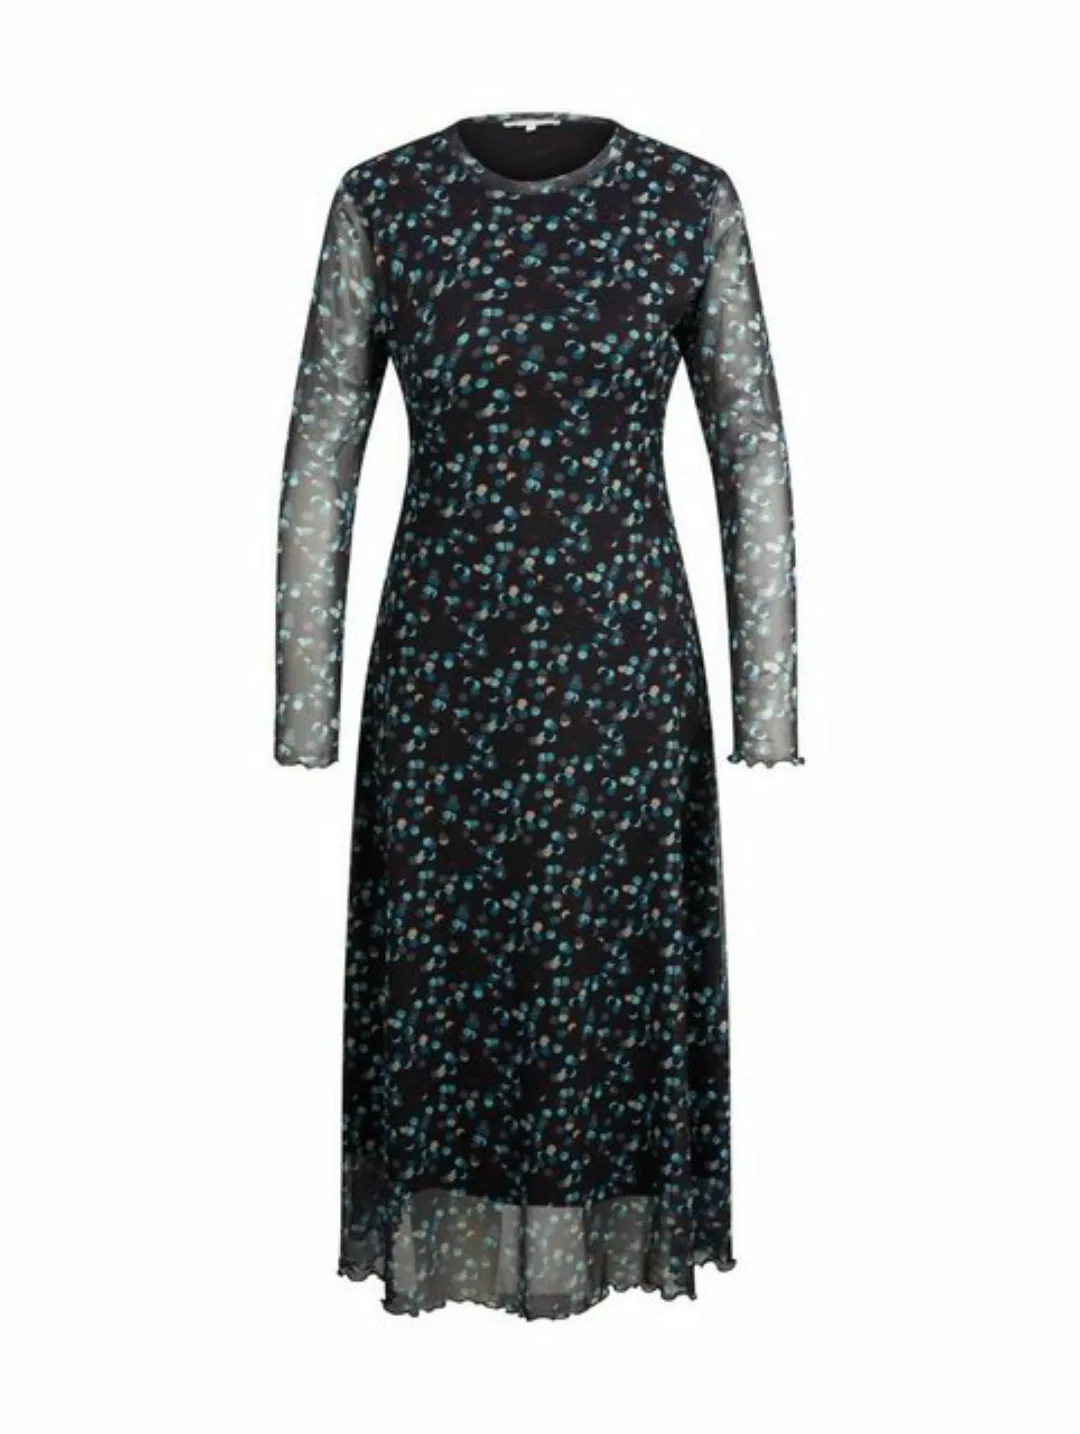 TOM TAILOR Denim Sommerkleid MESH PRINTED aus Polyester günstig online kaufen